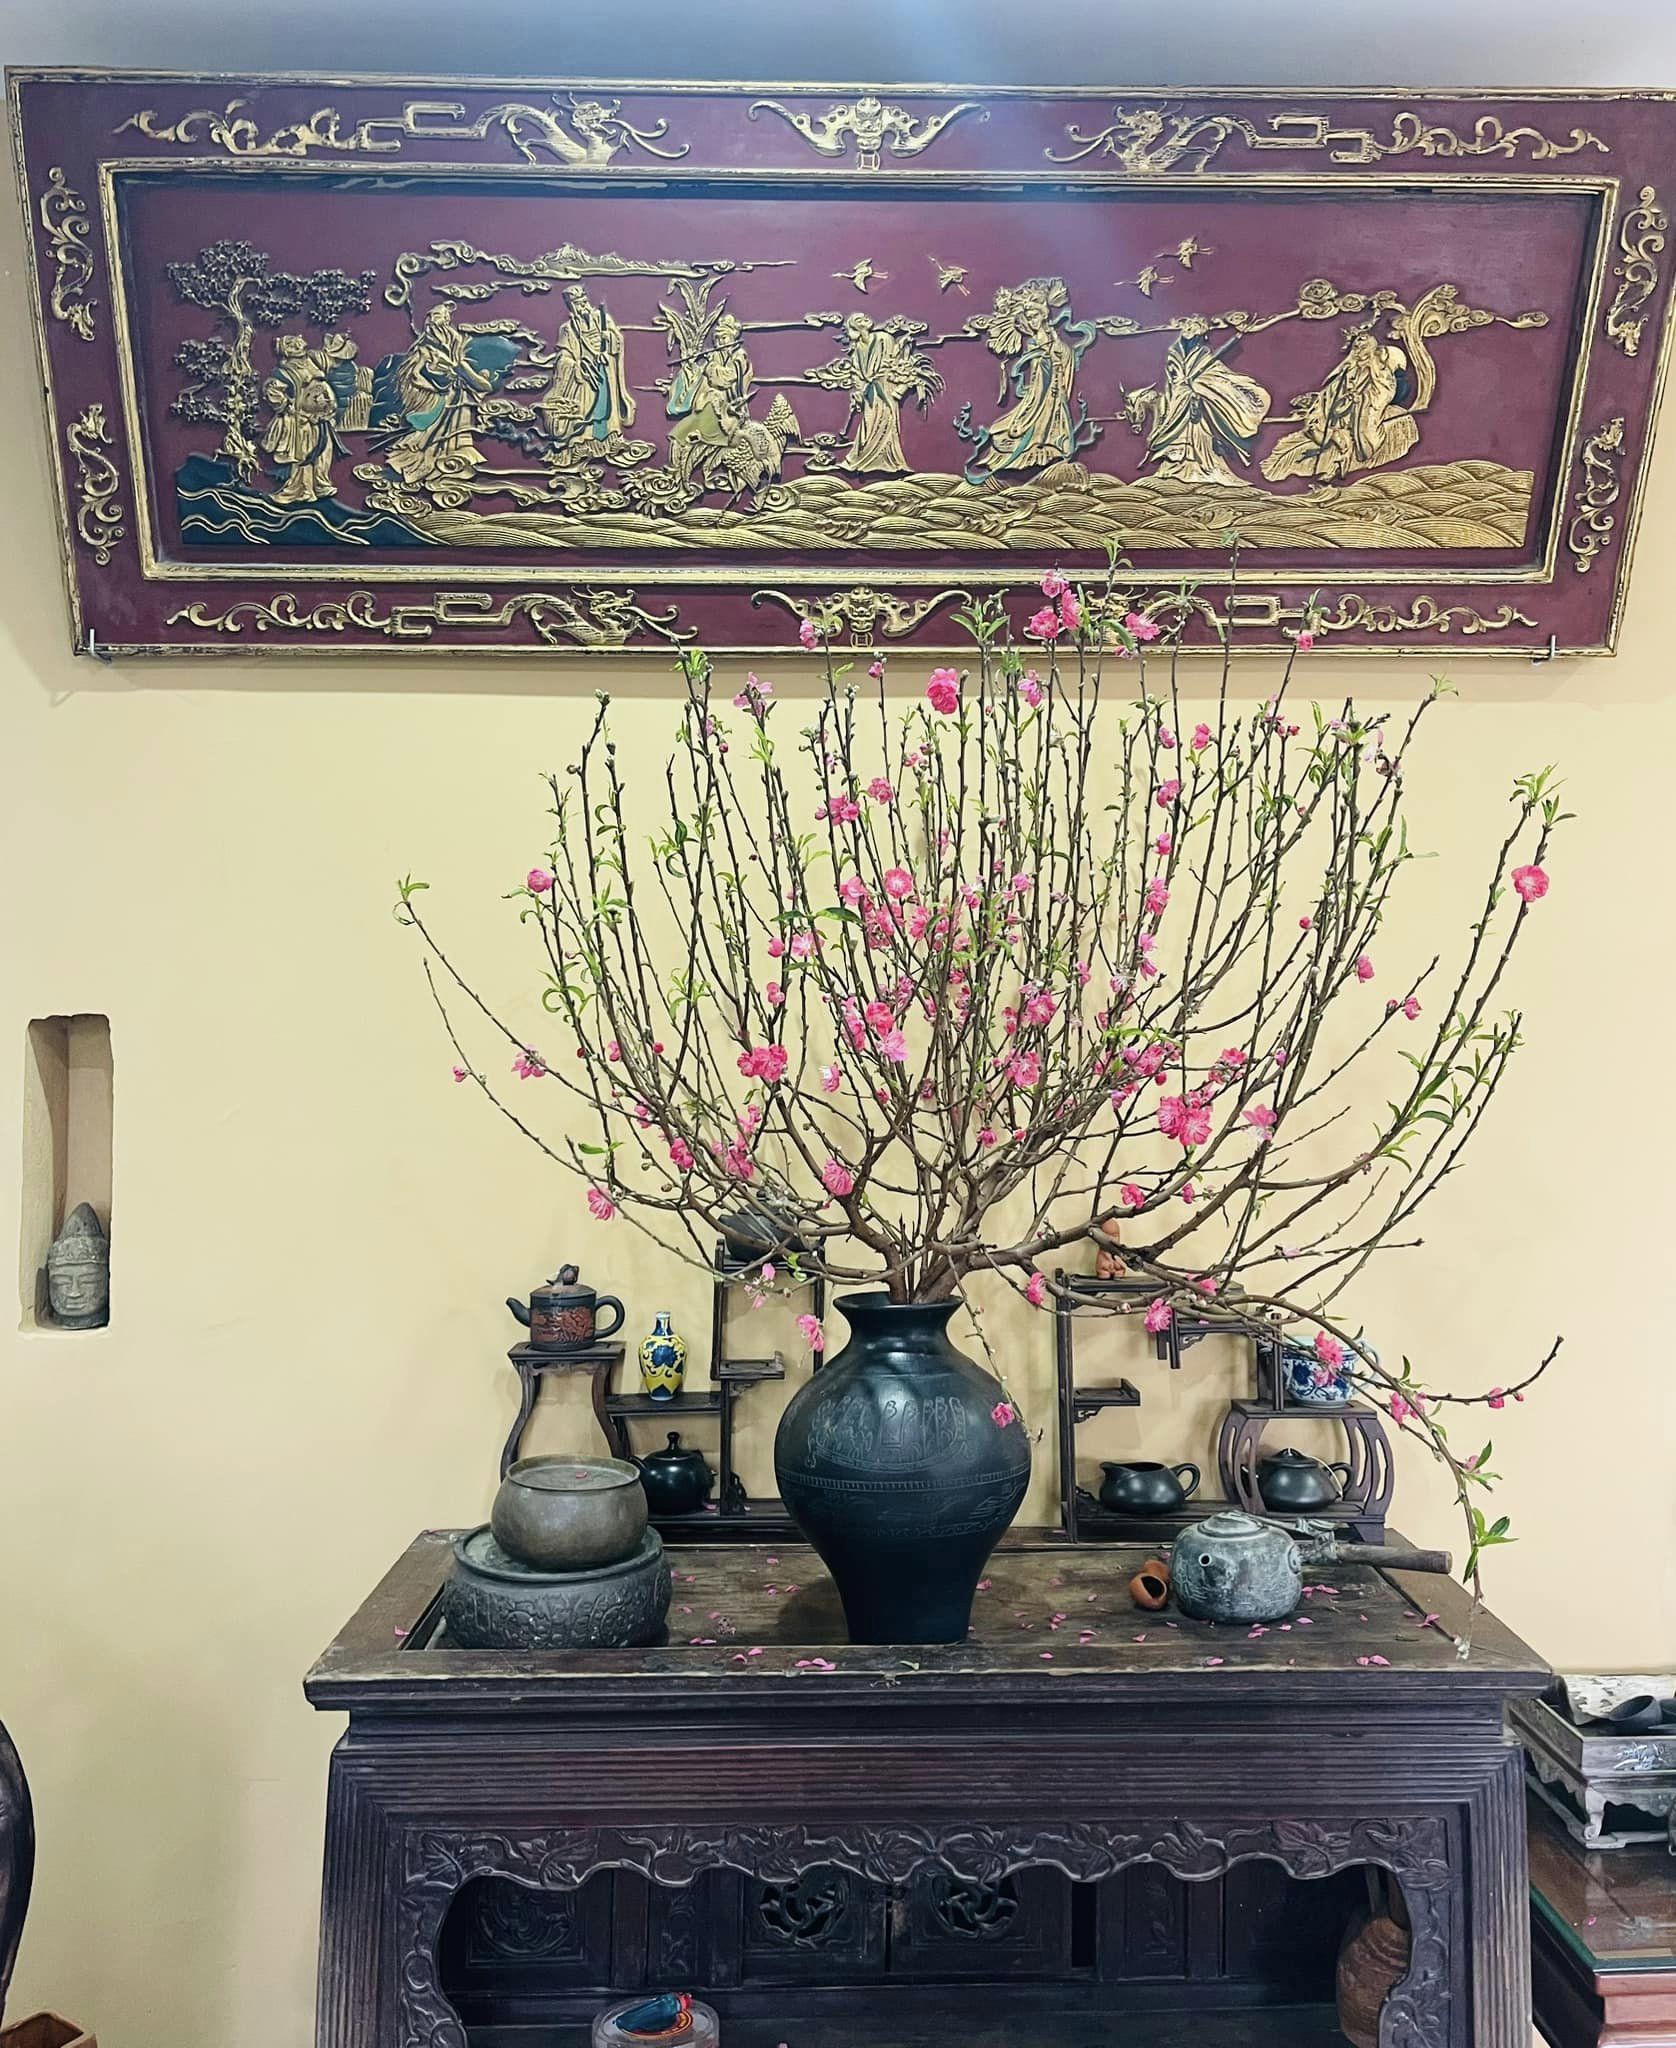 Thời gian ngưng đọng trong căn nhà của một gia đình Hà Nội đam mê sưu tập đồ cũ- Ảnh 9.